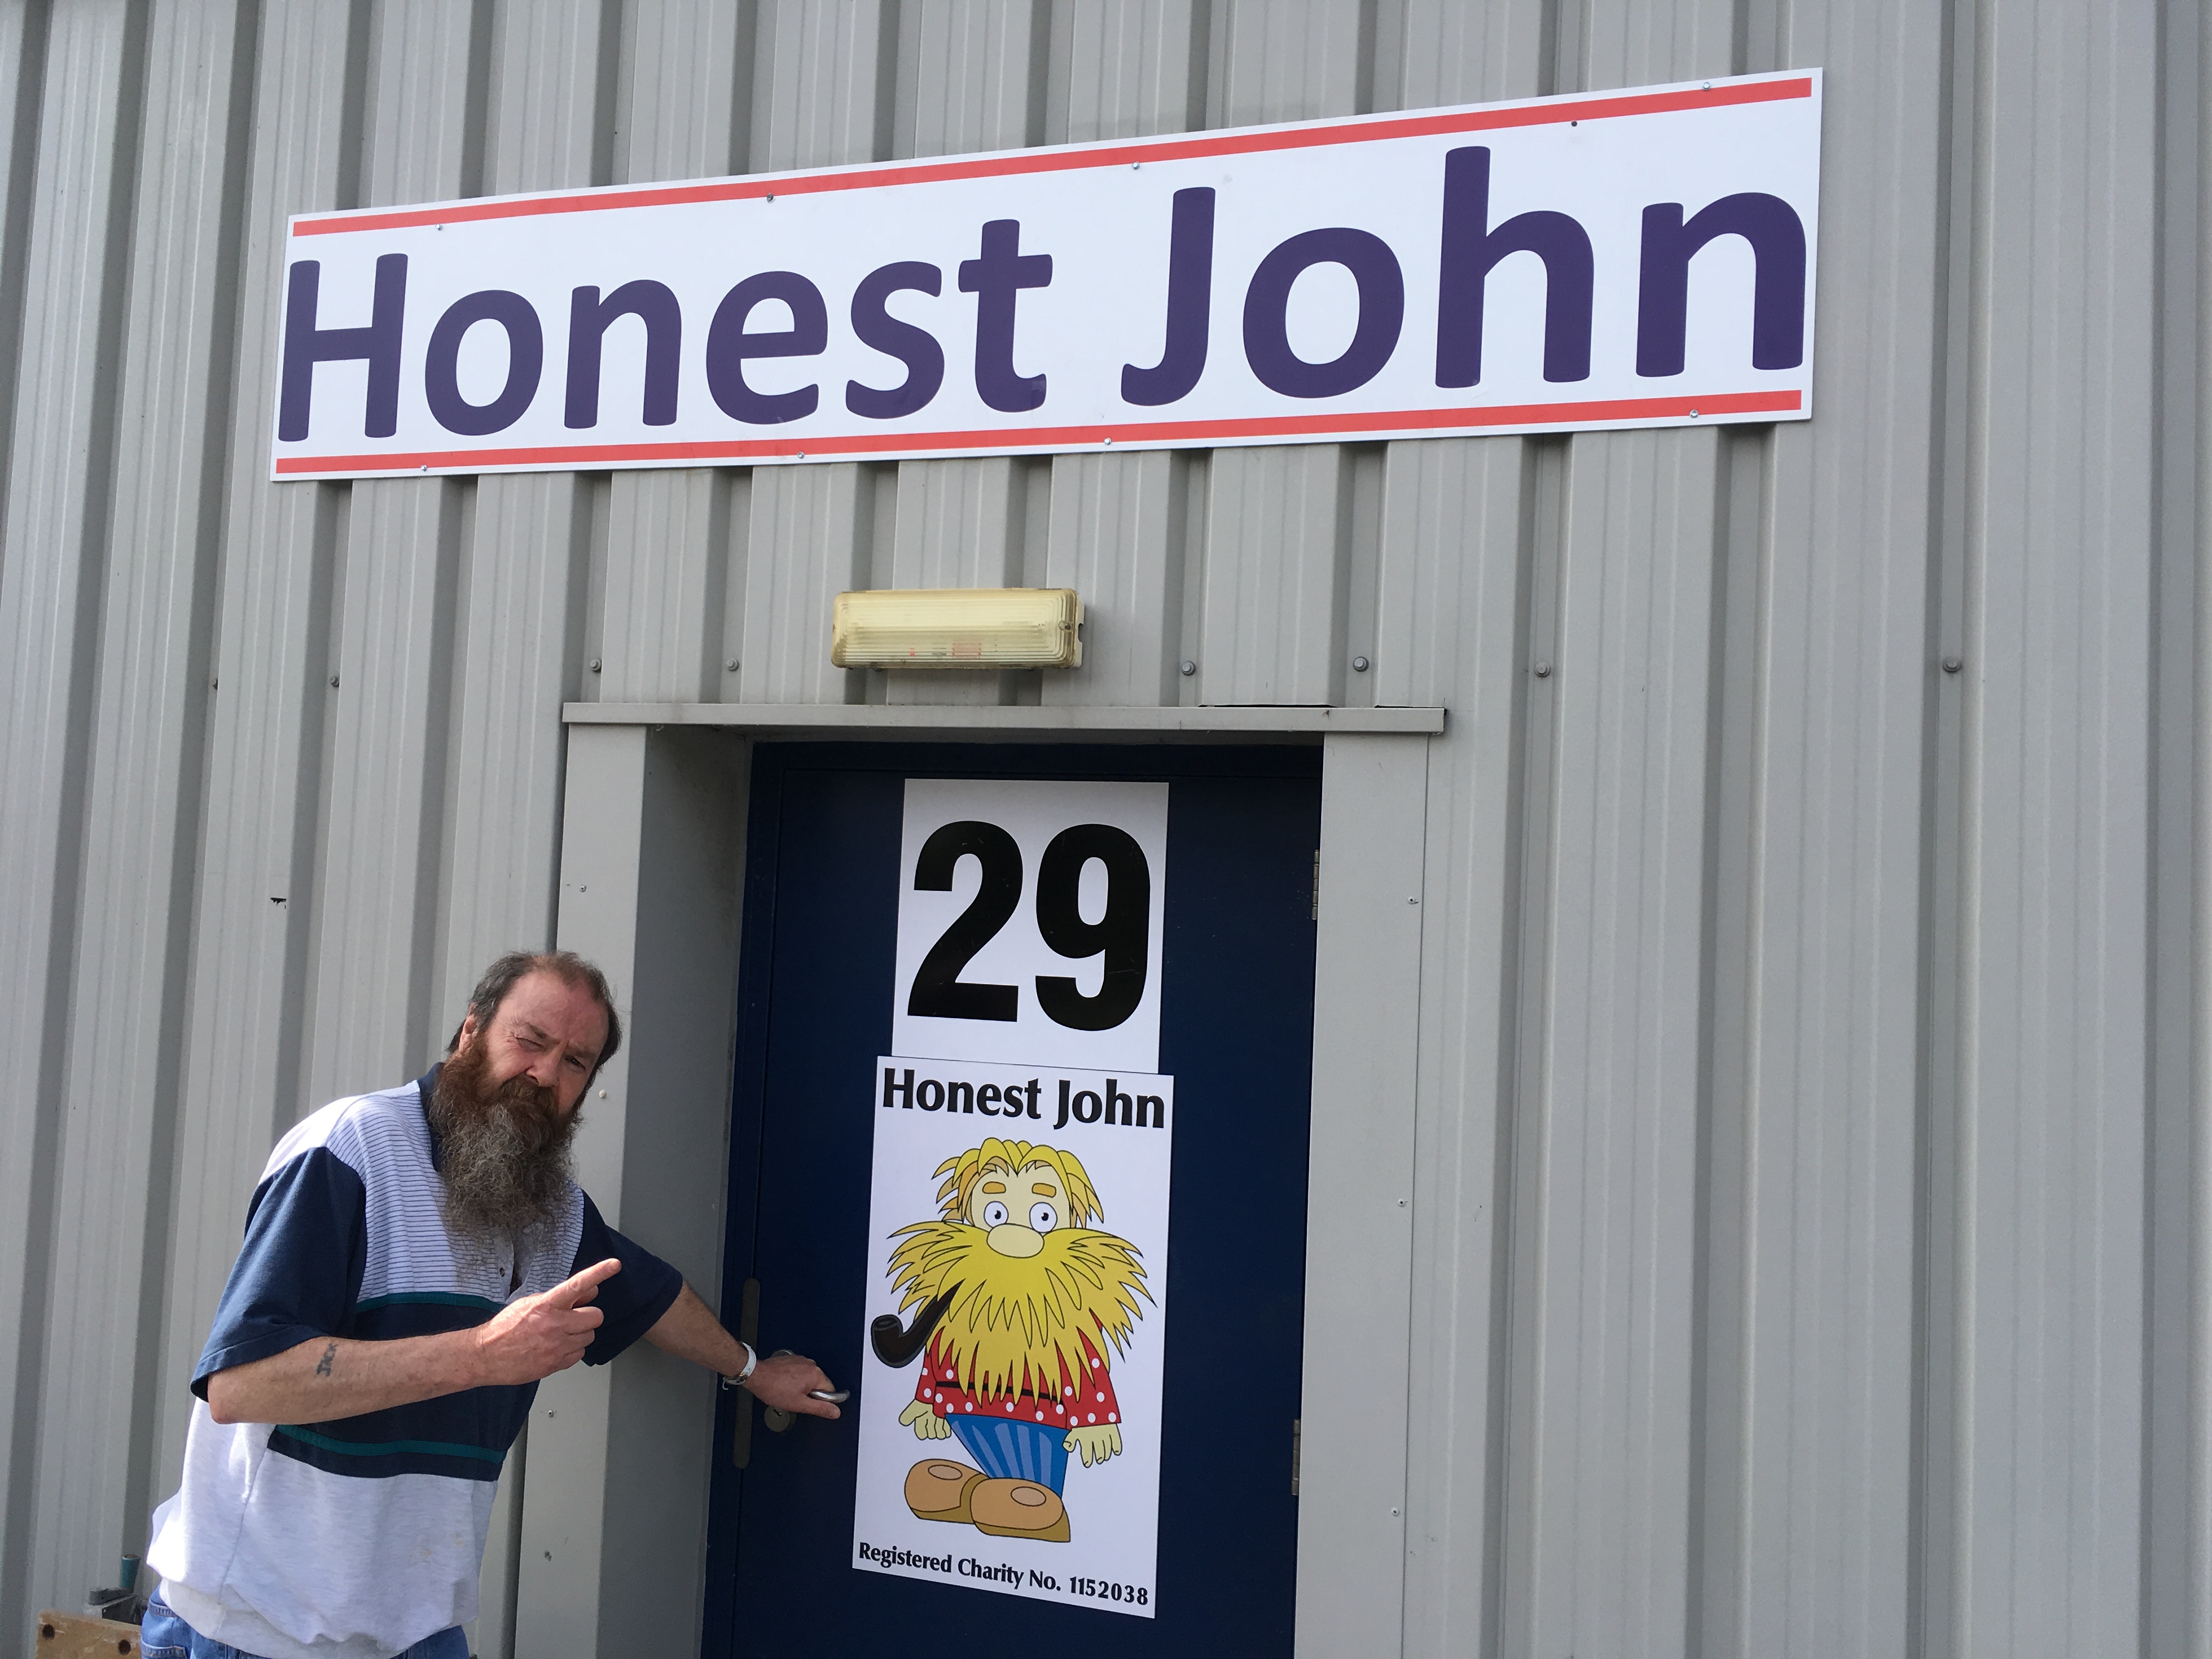 R.I.P. Honest John